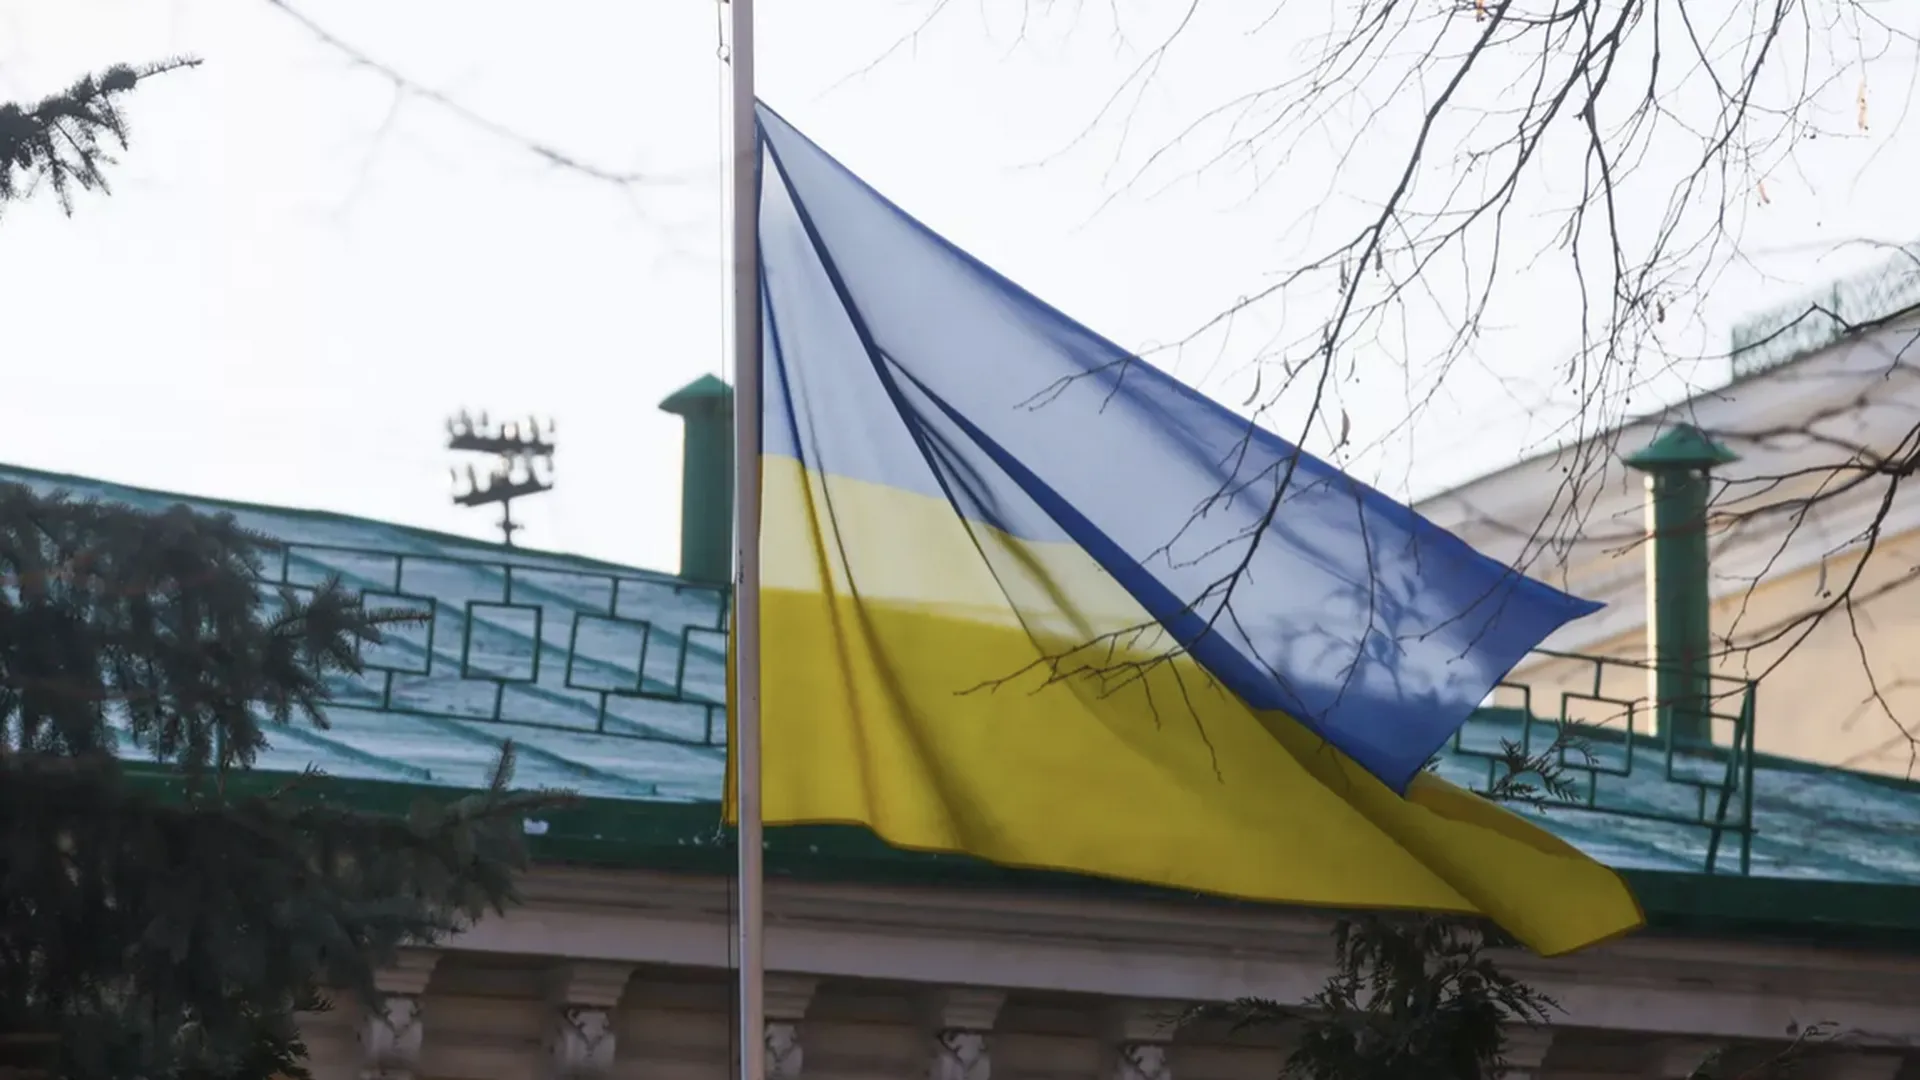 Вандалы разрезали флаги Украины на мемориале напротив мэрии Днепропетровска